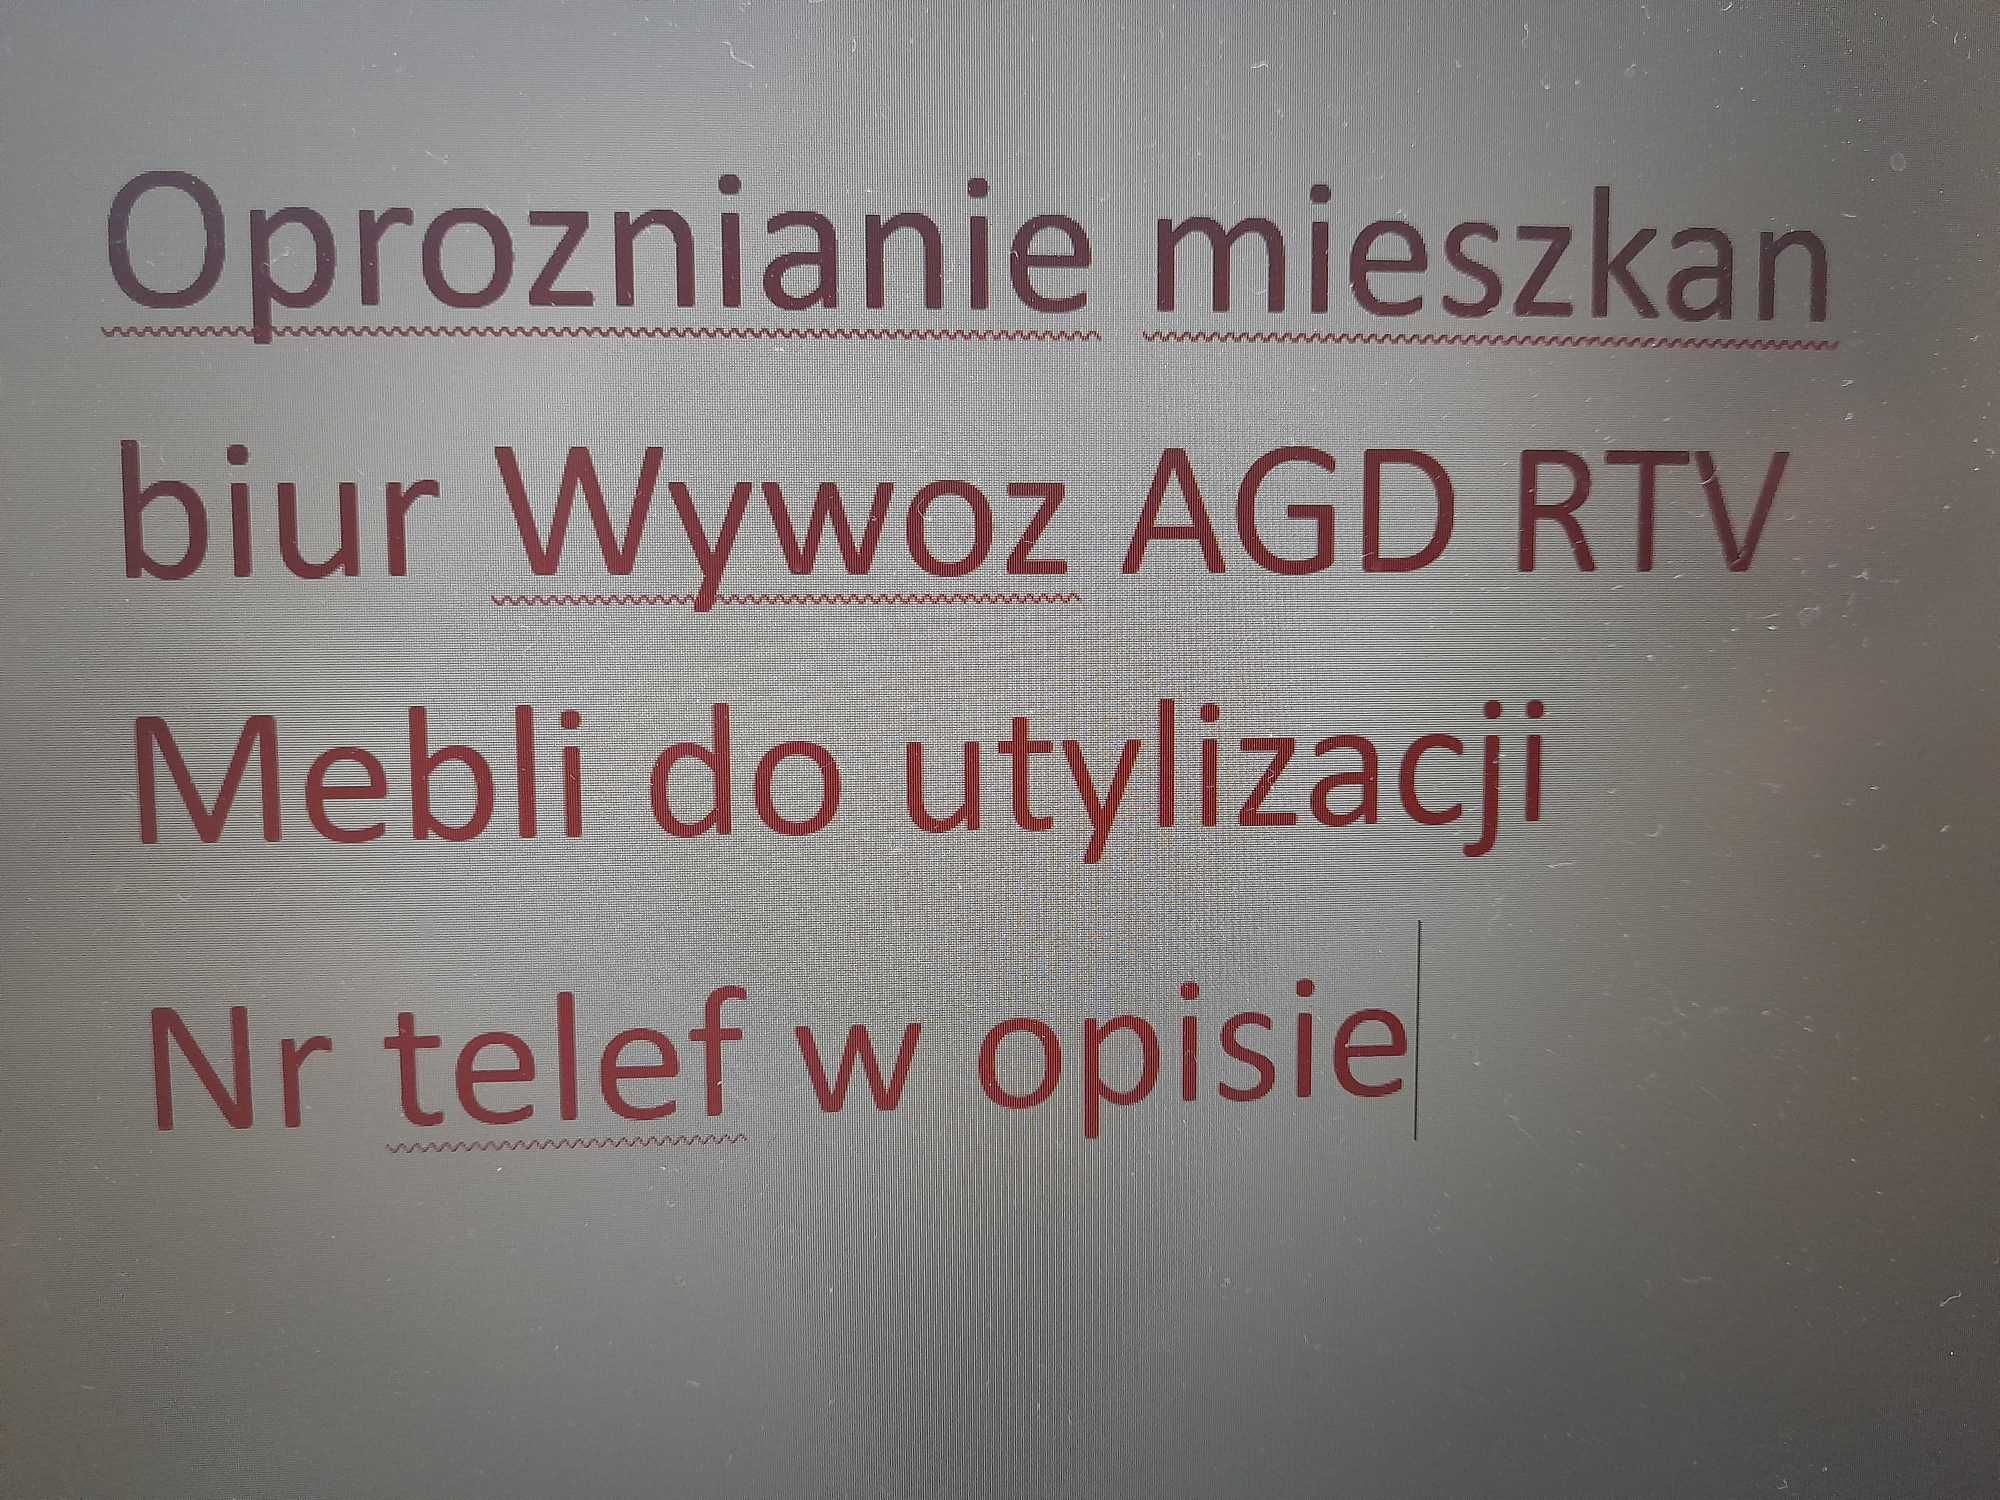 Oproznianie mieszkan biur Wywoz AGD RTV Mebli utylizacjia gliwice